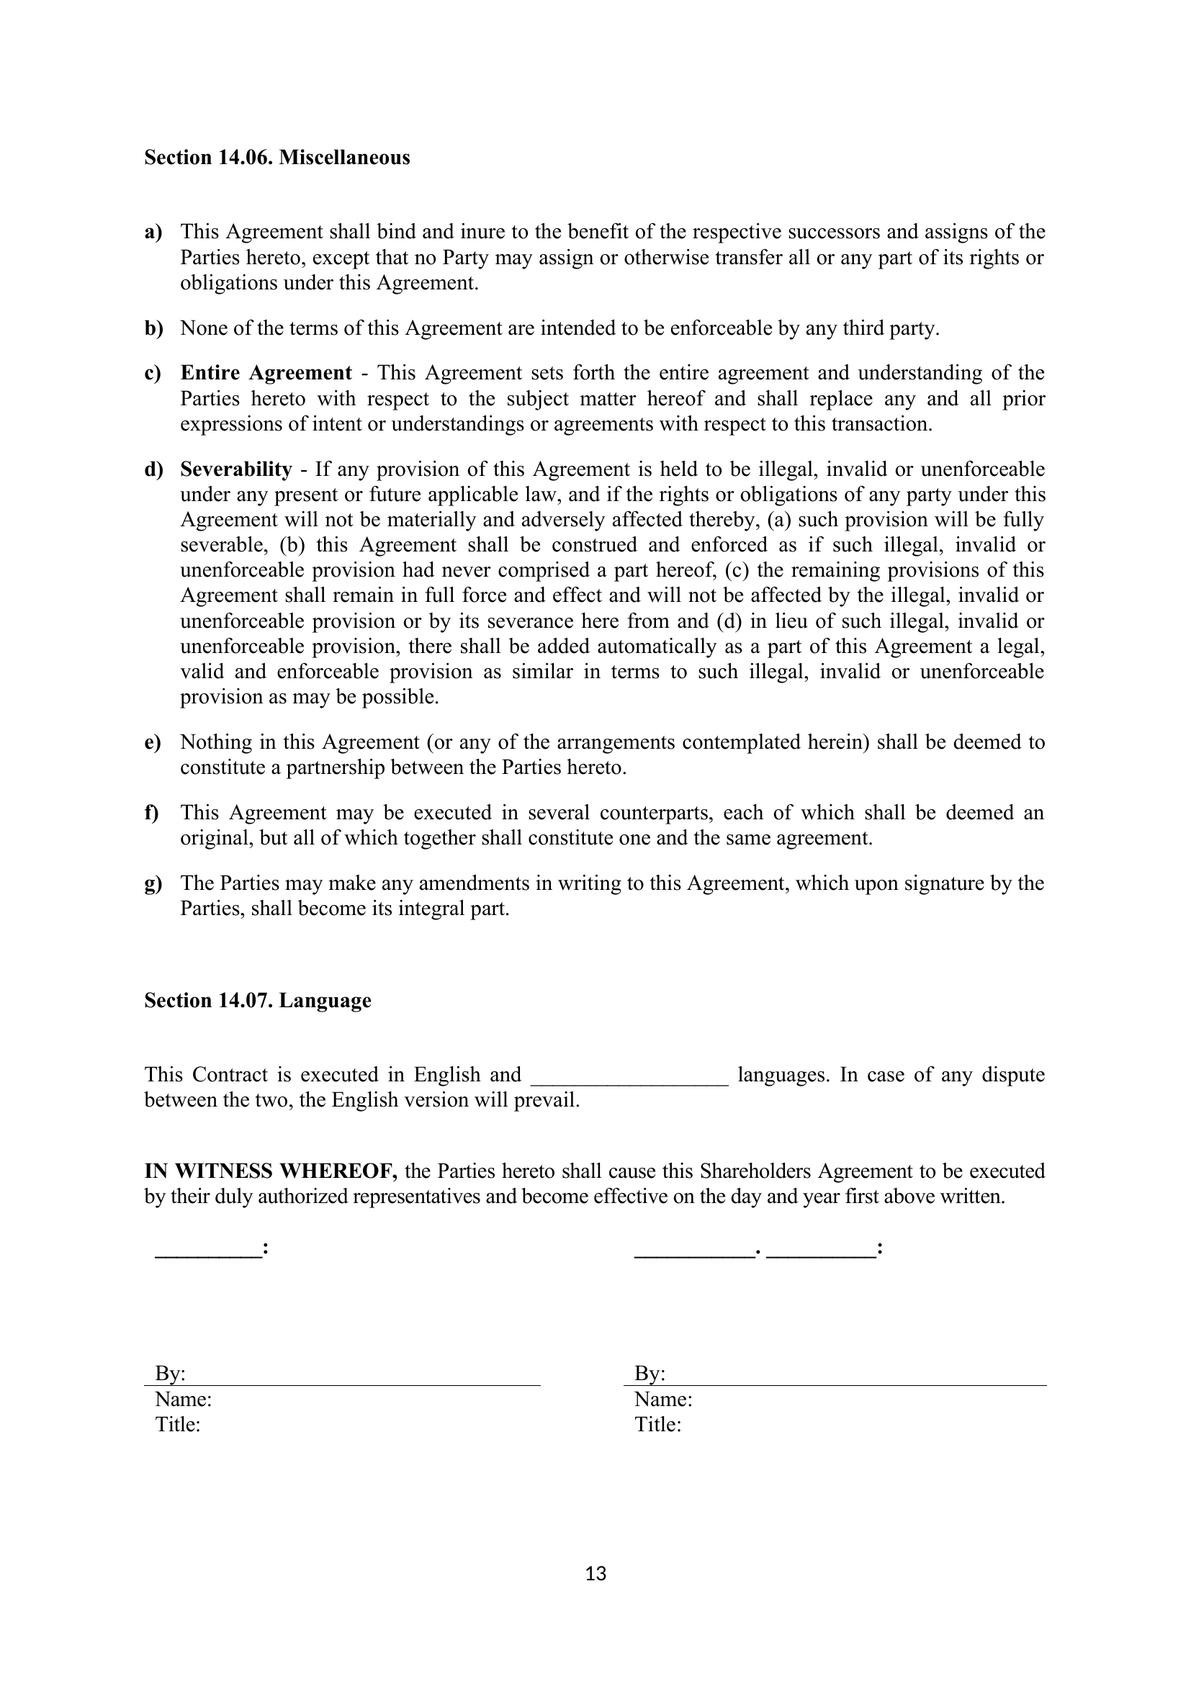 Shareholders agreement-2